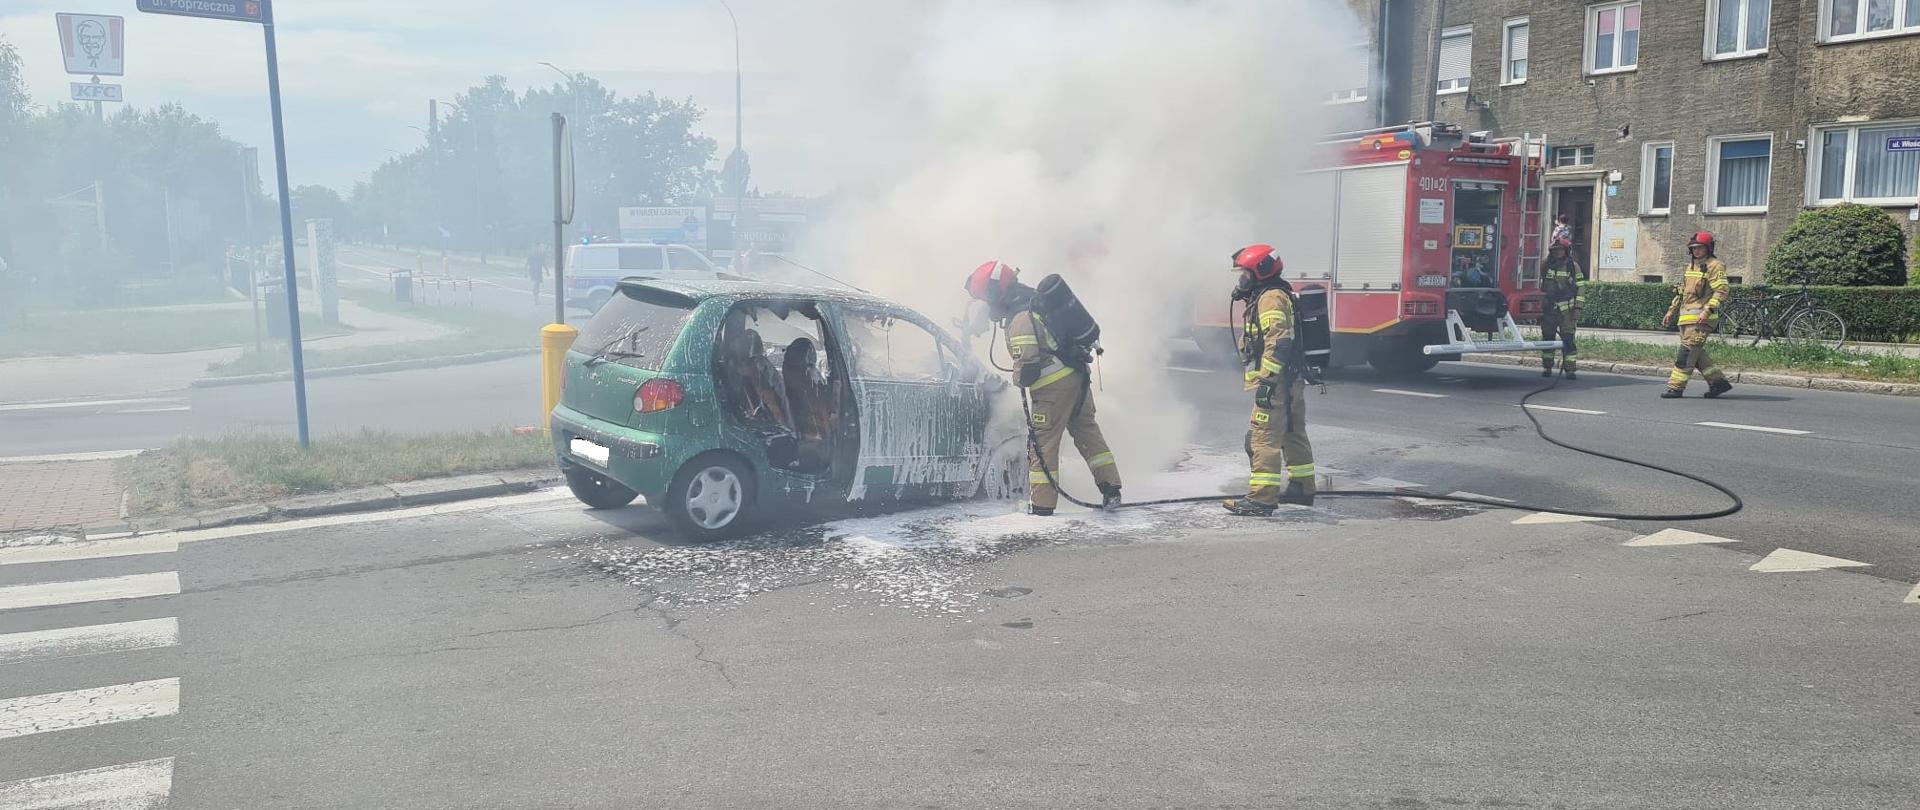 Pożar samochodu osobowego na skrzyżowaniu ul. Poprzecznej z ul. Chocimską w Brzegu - zdjęcie przedstawia strażaków ubranych w aparaty powietrzne podający prąd piany ciężkiej na palący się samochód osobowy w kolorze zielonym